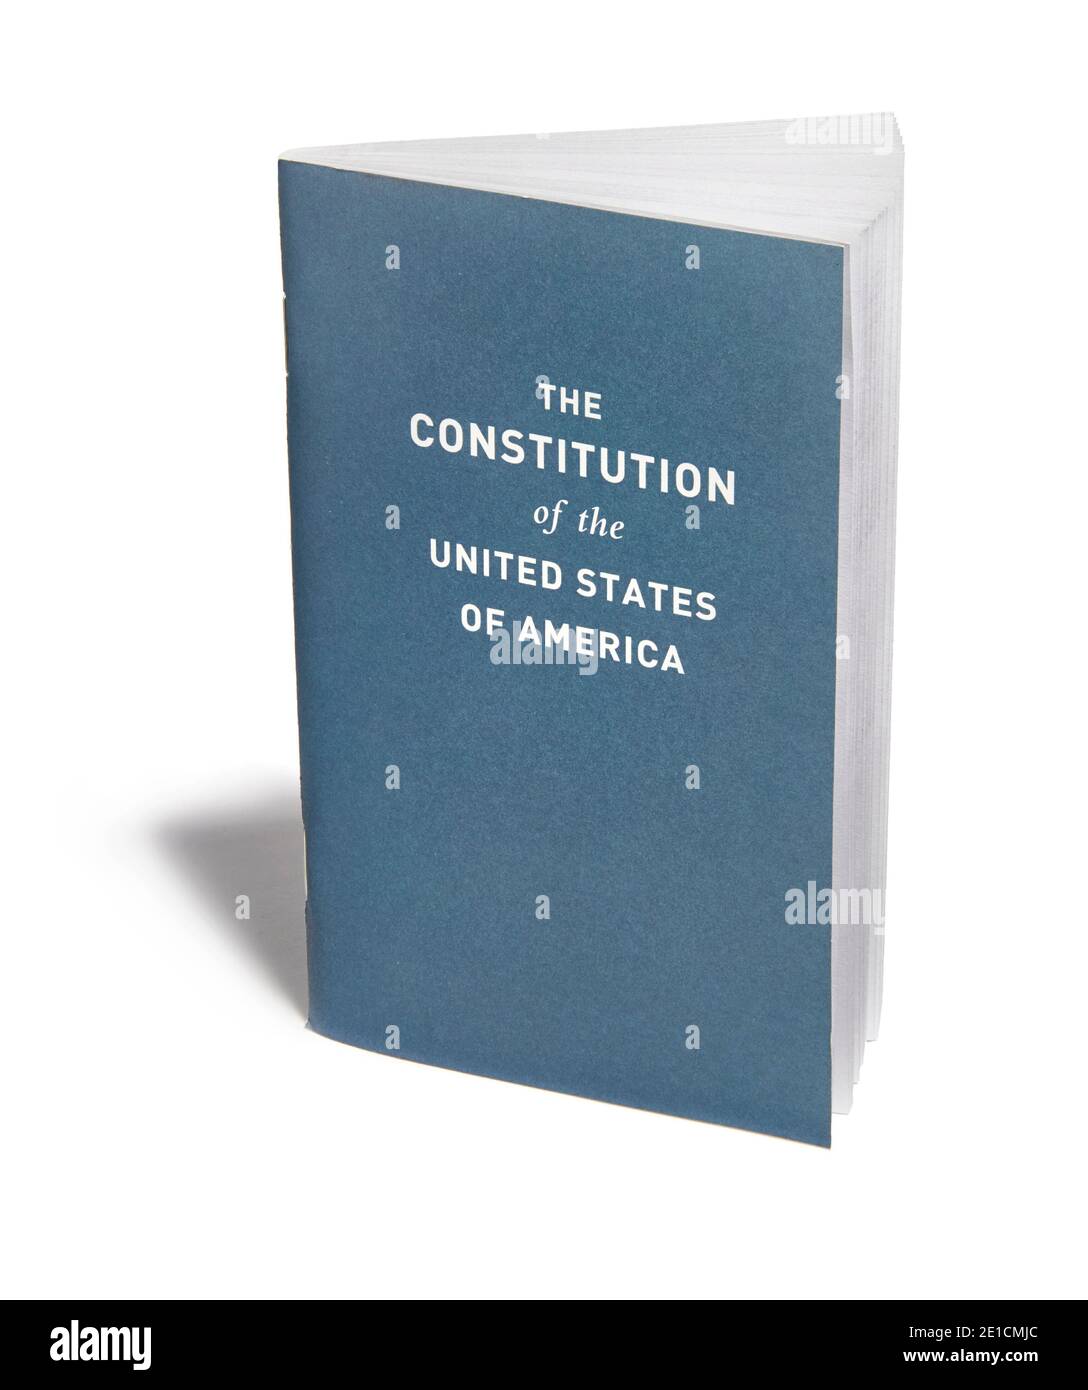 ACLU US Constitution brochure debout photographié sur un blanc arrière-plan Banque D'Images